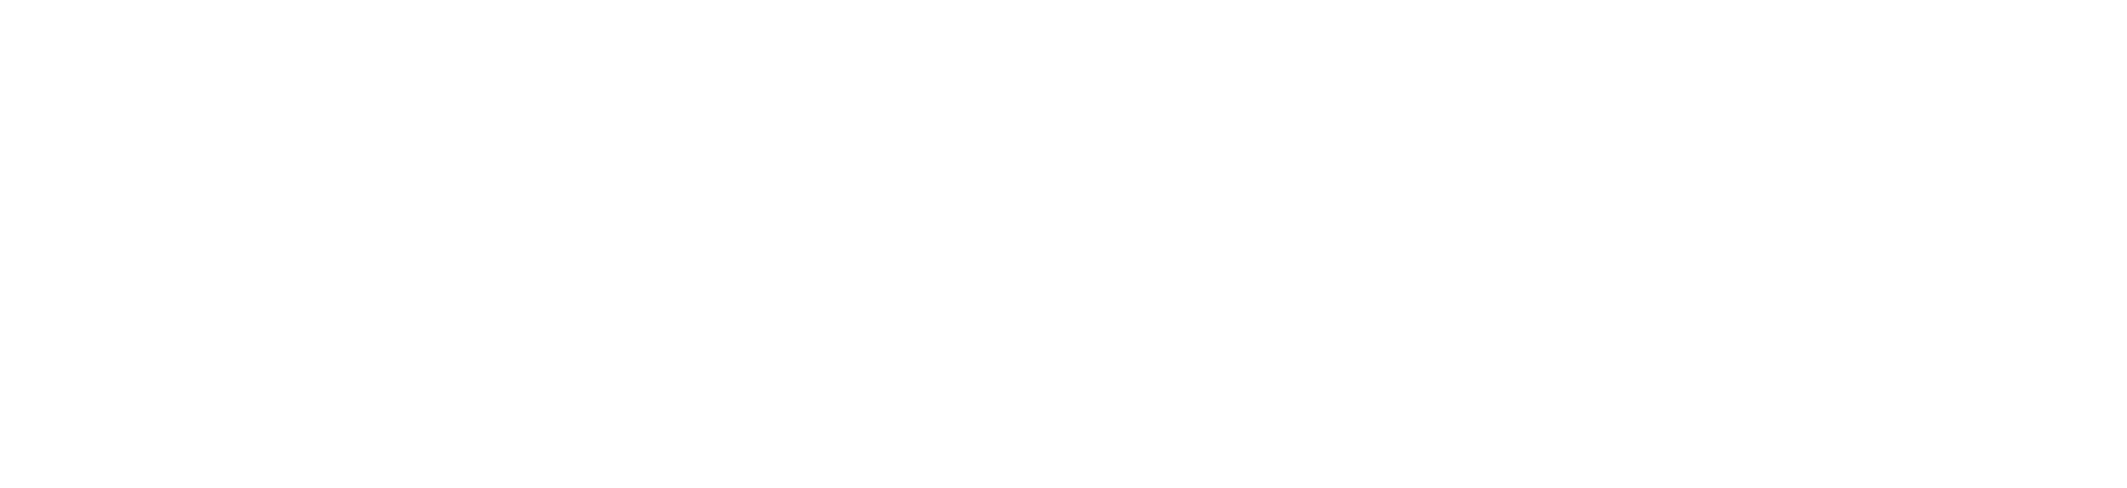 Organogenesis logo large for dark backgrounds (transparent PNG)